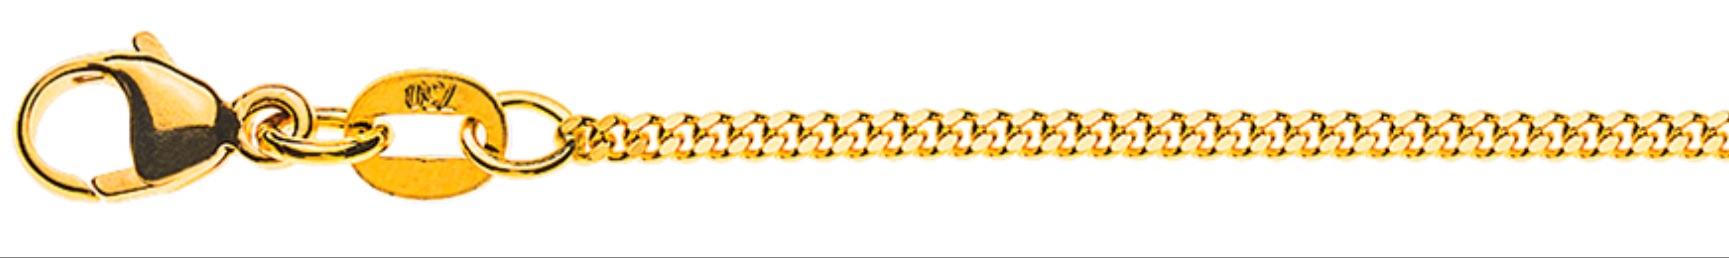 AURONOS Élégance Necklace yellow gold 14K curb chain polished 38cm 1.6mm